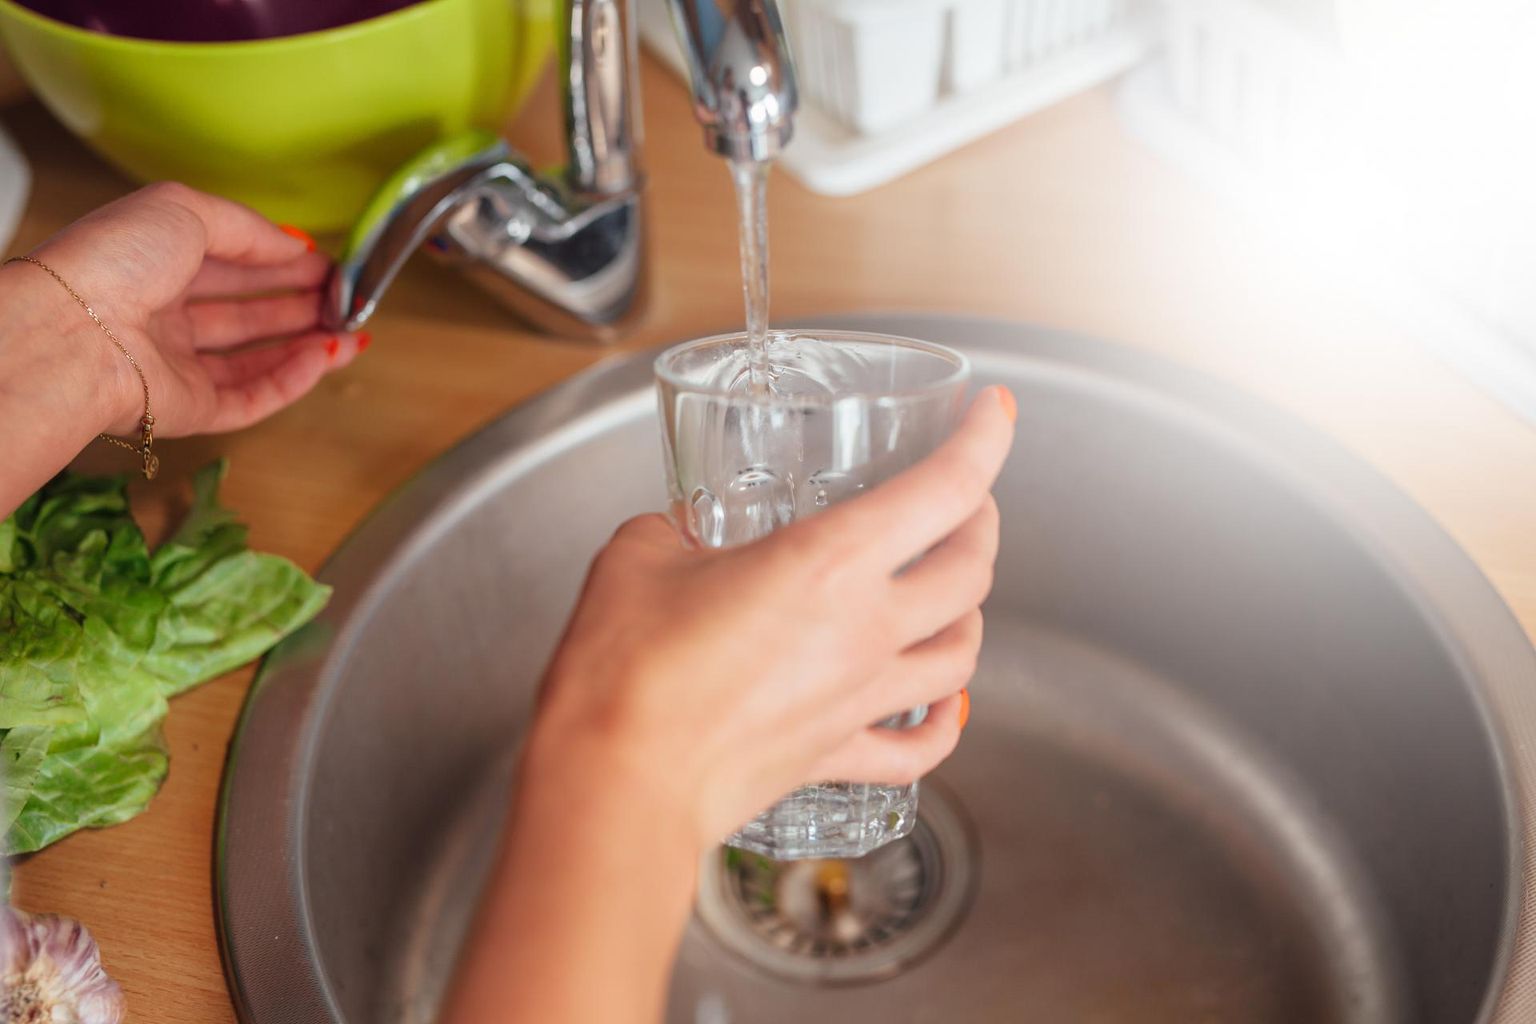 Inimestel on sageli eksiarvamus, et põhjavesi peab olema kohe joogivee kvaliteediga.